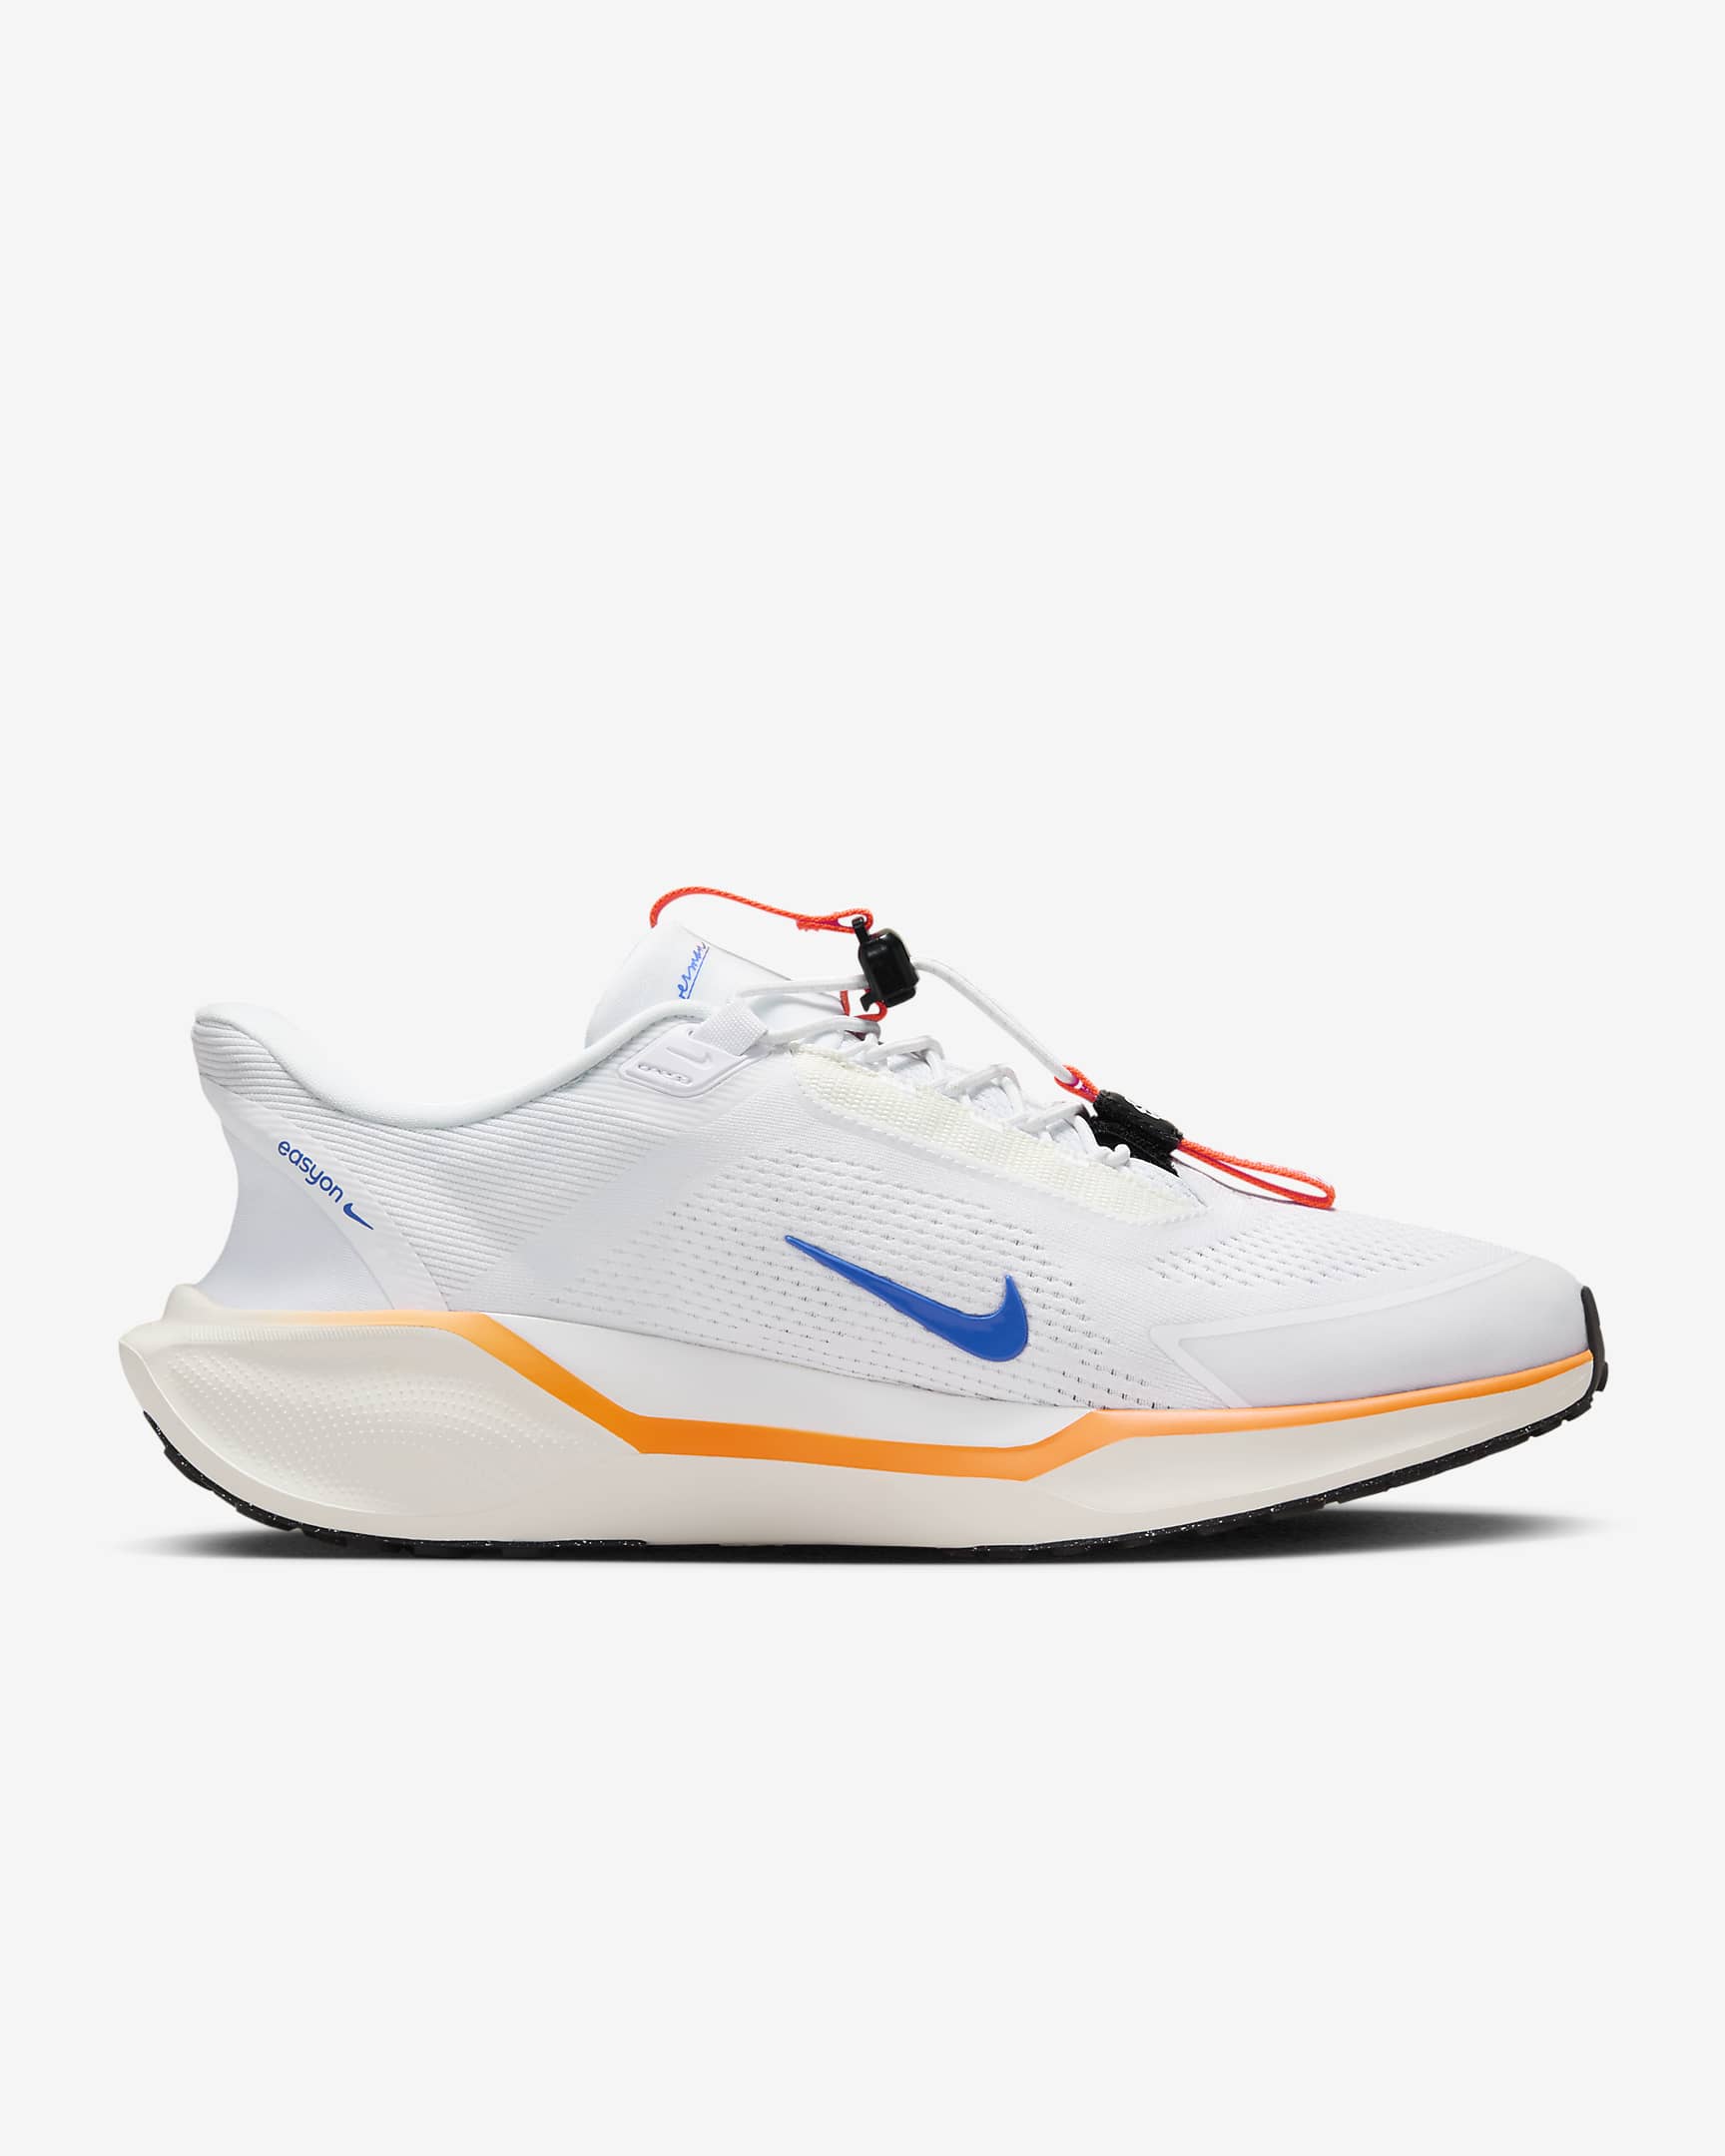 Nike Pegasus EasyOn Blueprint Men's Road Running Shoes - Multi-Colour/Multi-Colour